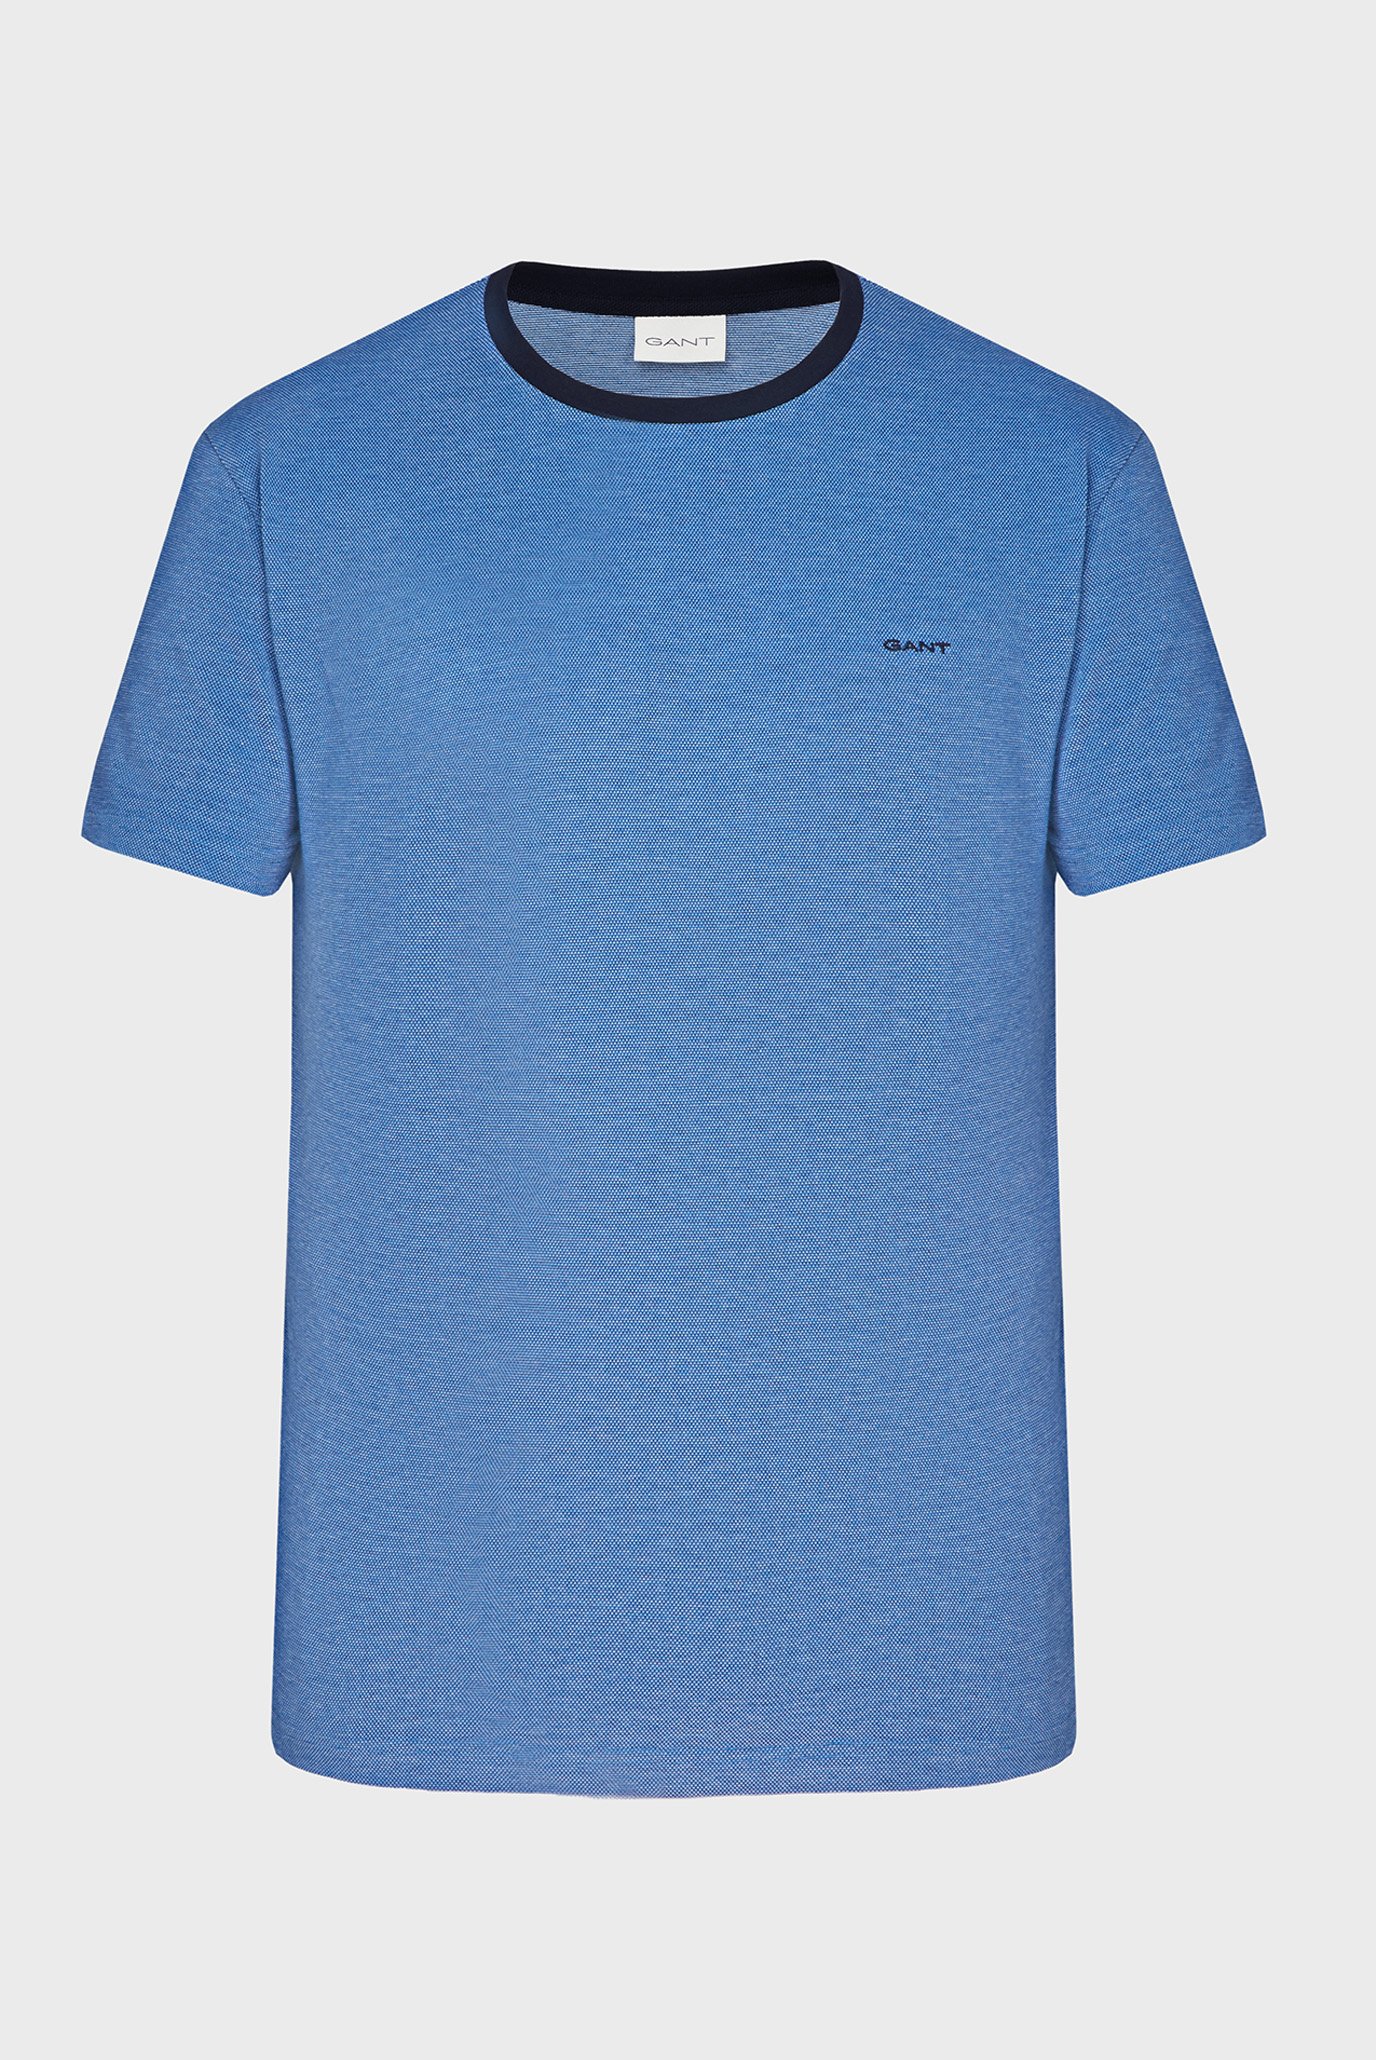 Мужская синяя футболка 4-COL OXFORD 1